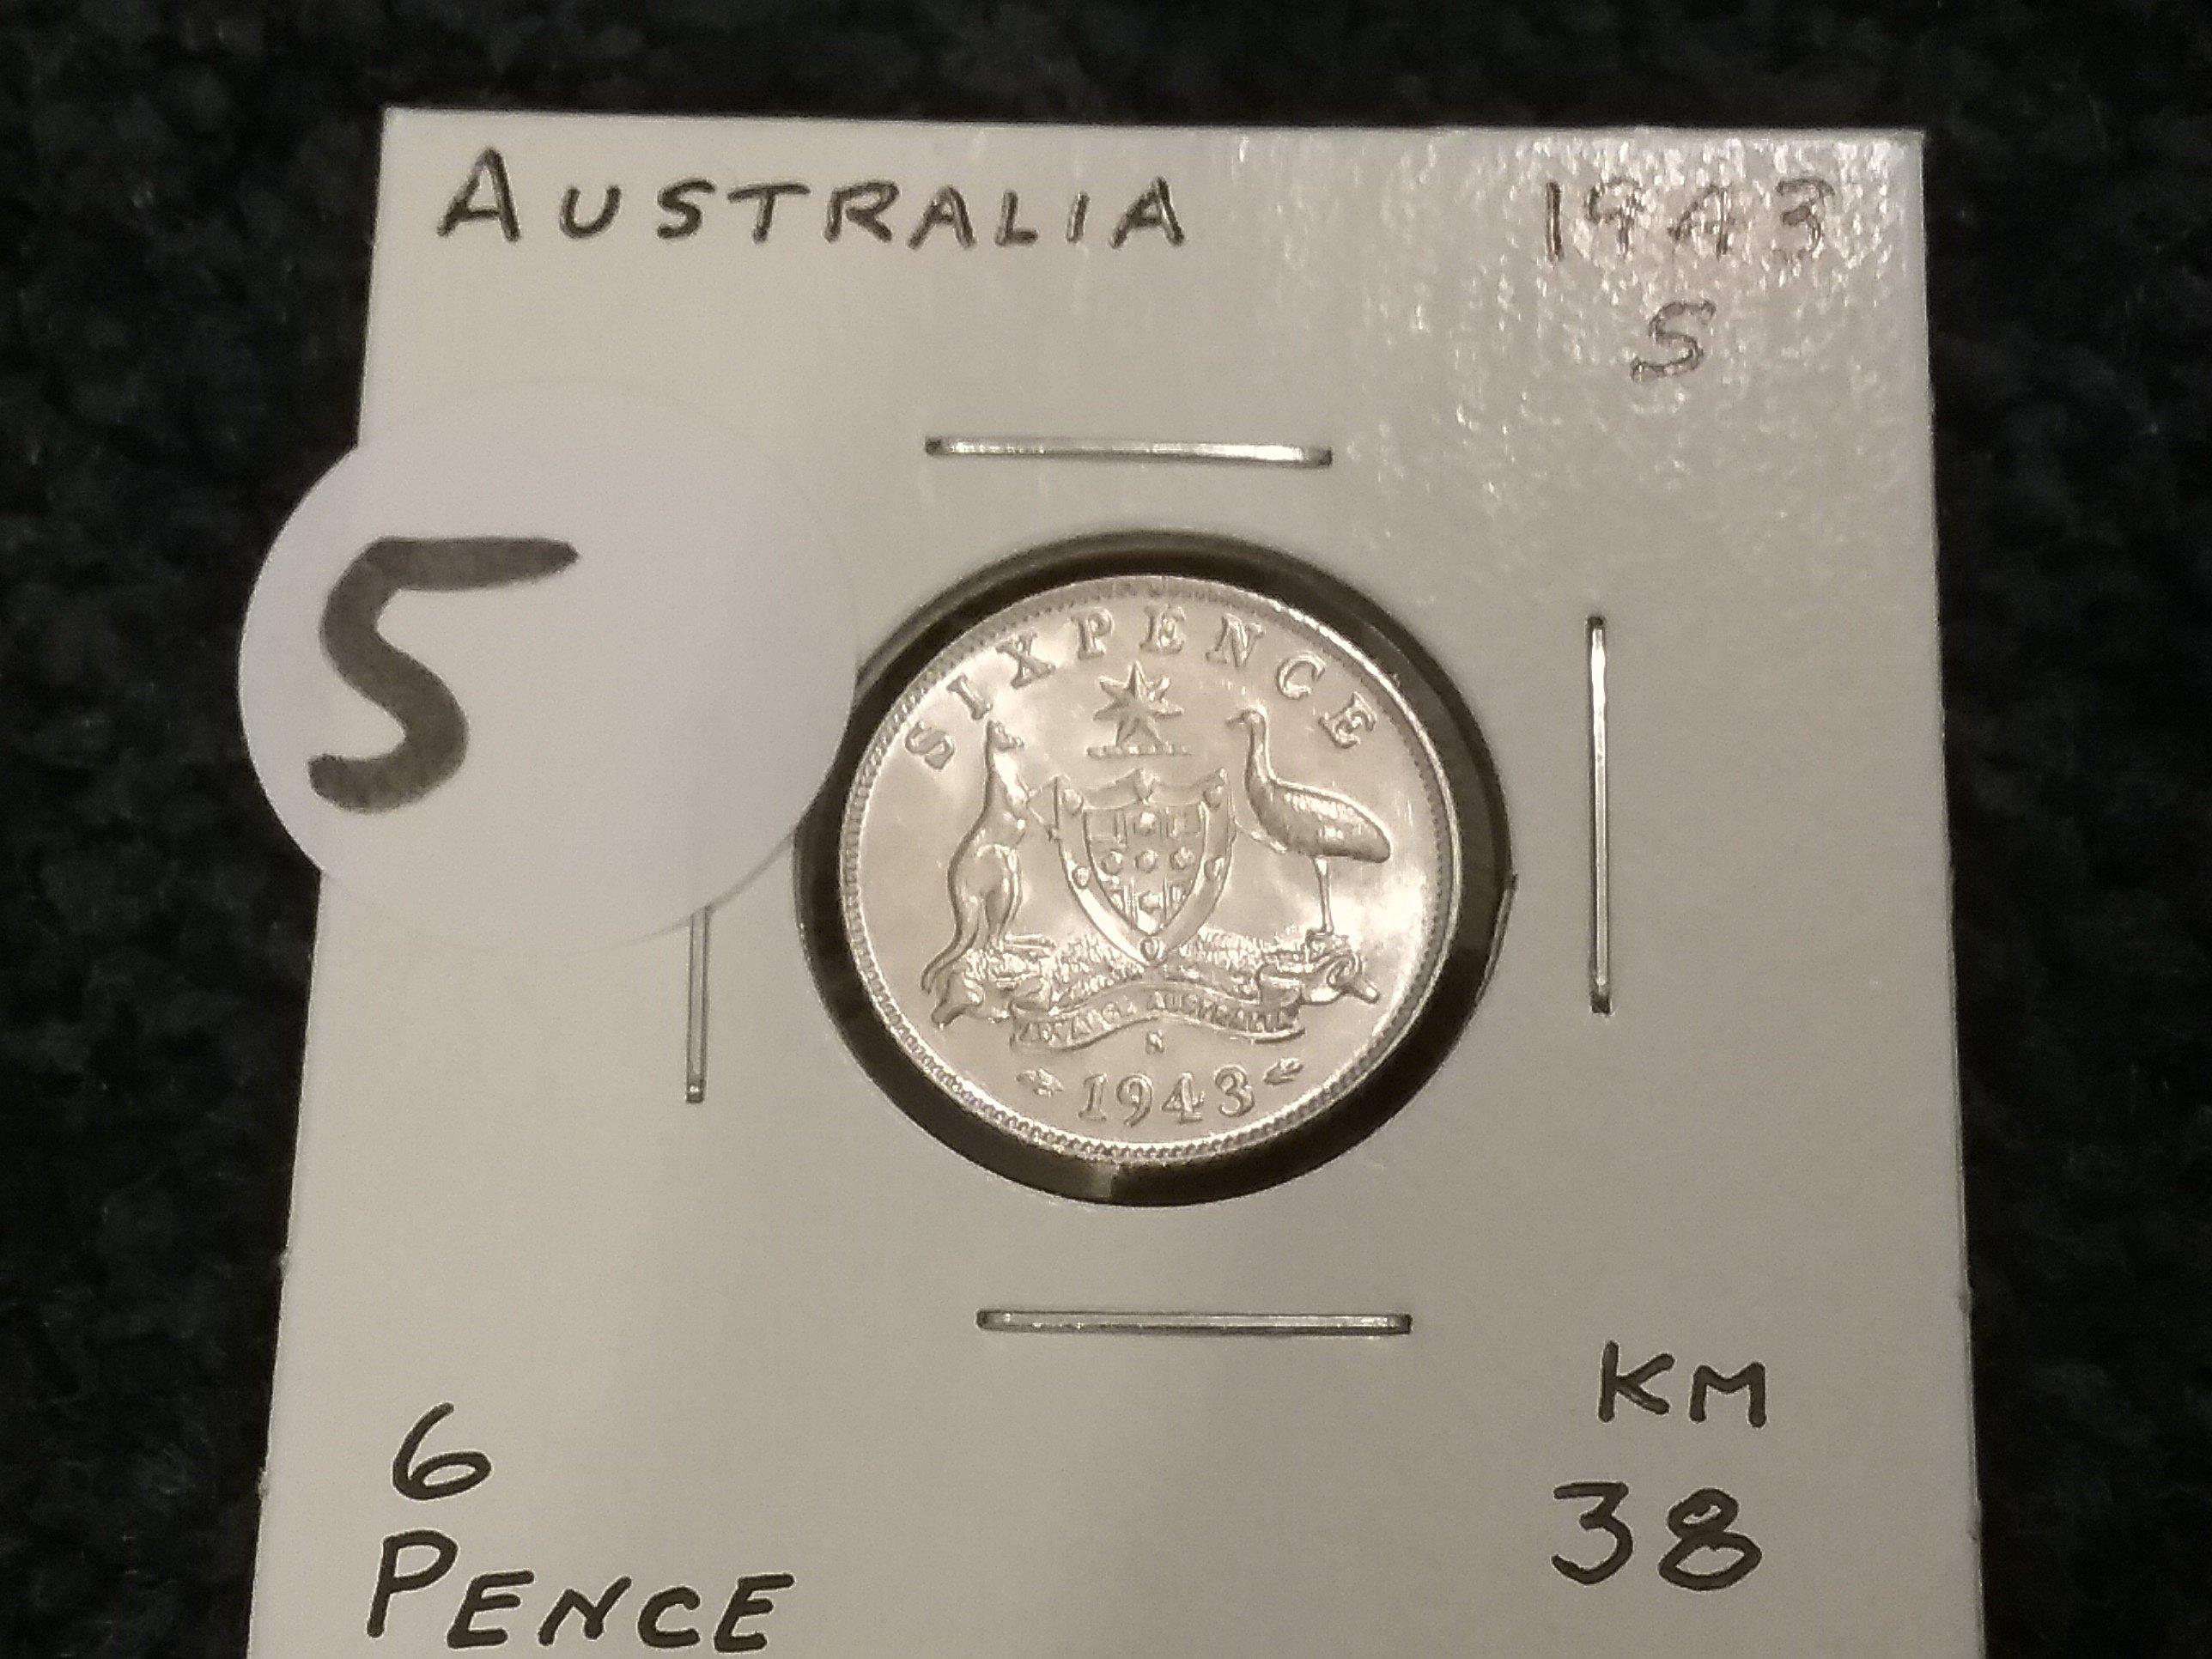 Australia 1943-S 6 pence UNC